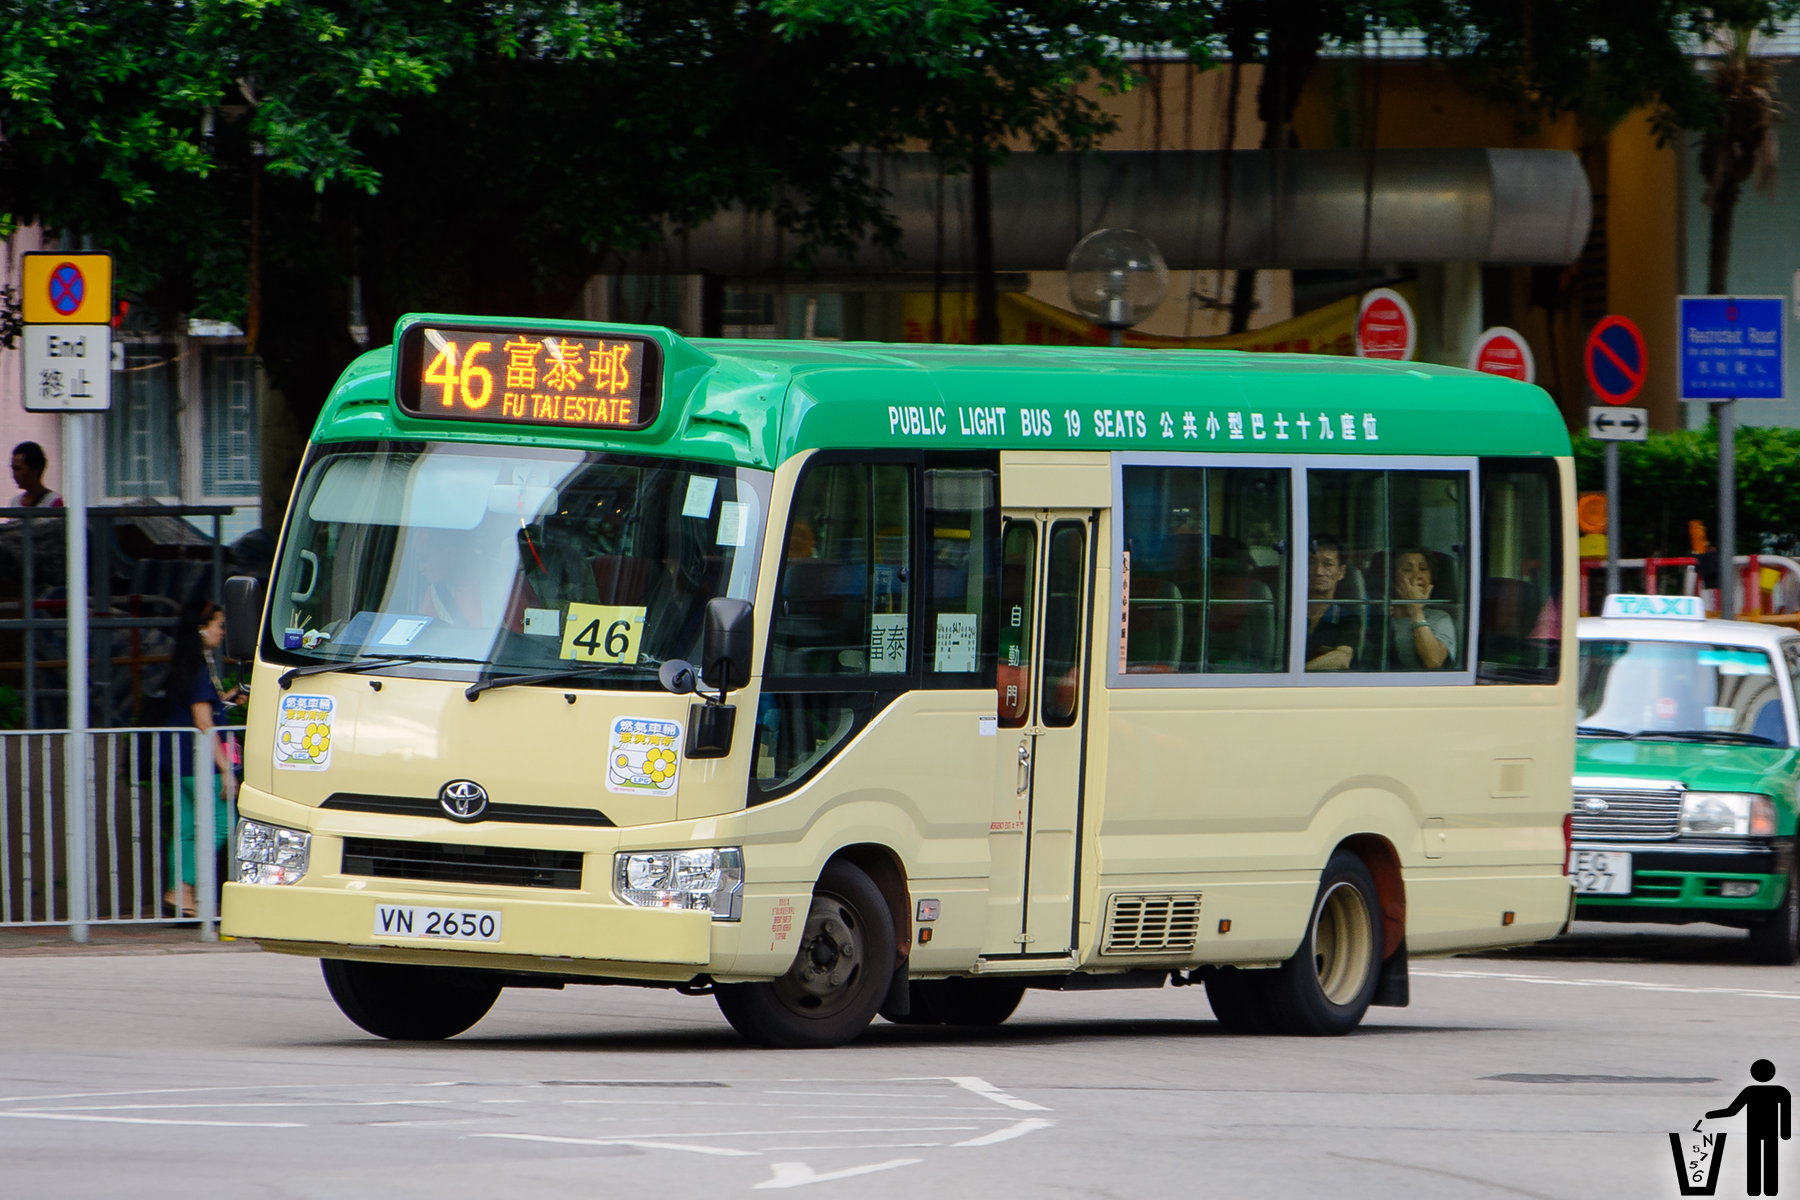 运输署 - 自二零二一年三月廿二号起发出的香港驾驶执照式样说明